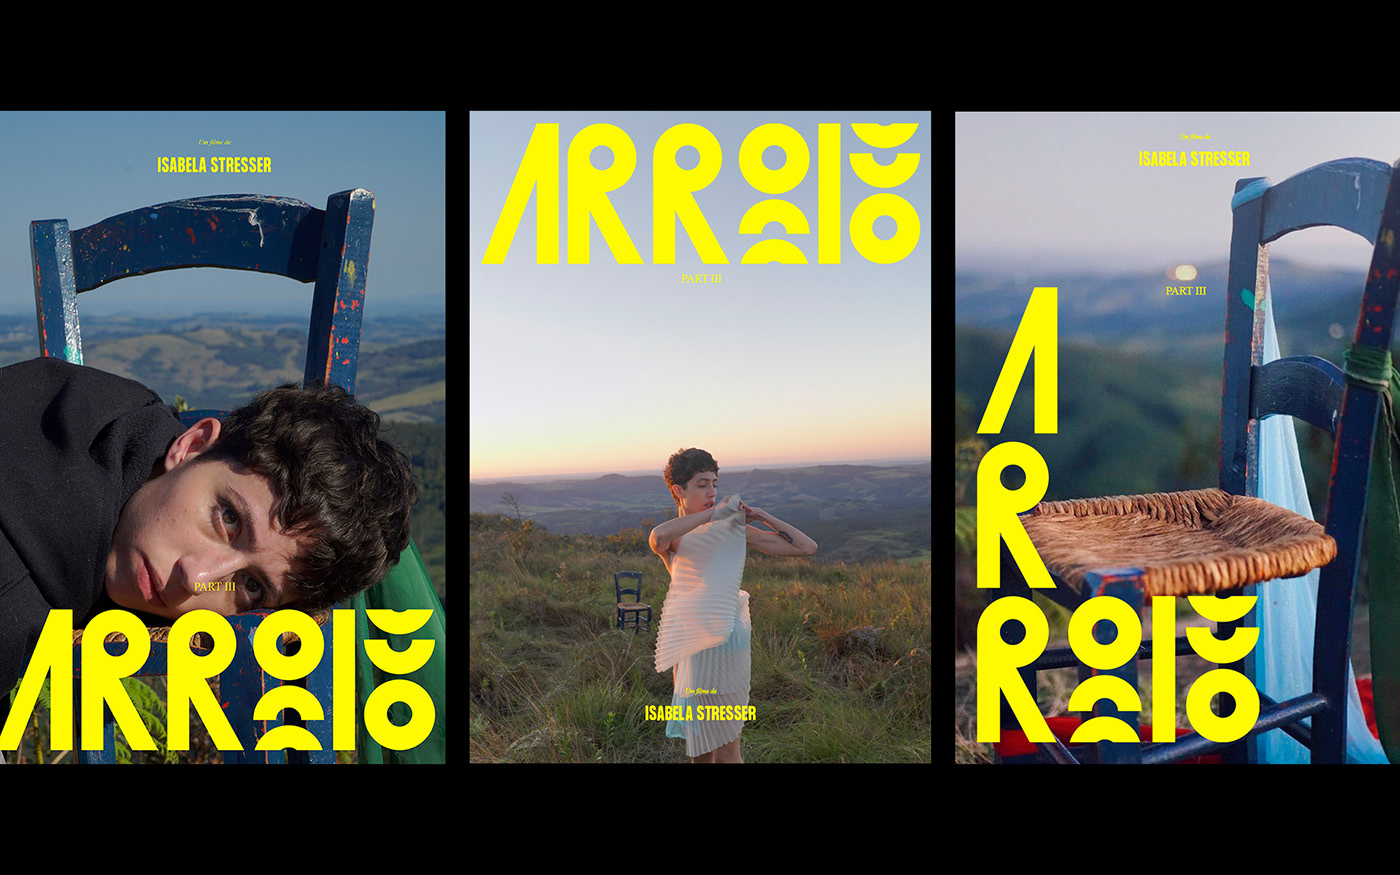 branding  curta metragem design Film   short film visual identity